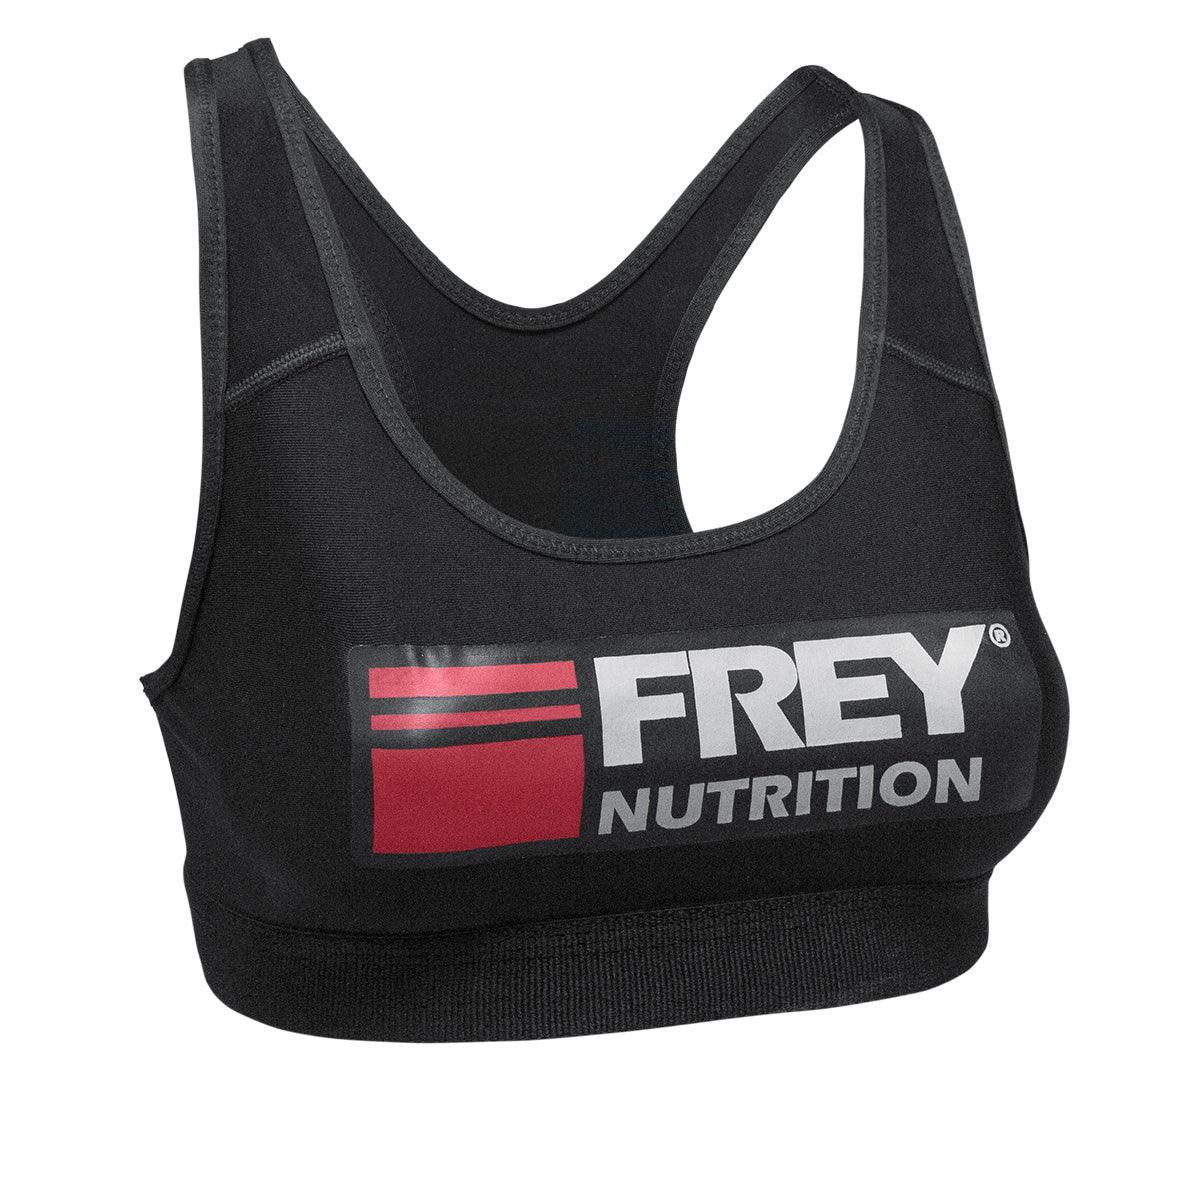 FREY SPORTS BRA - Demo-Frey-Nutrition